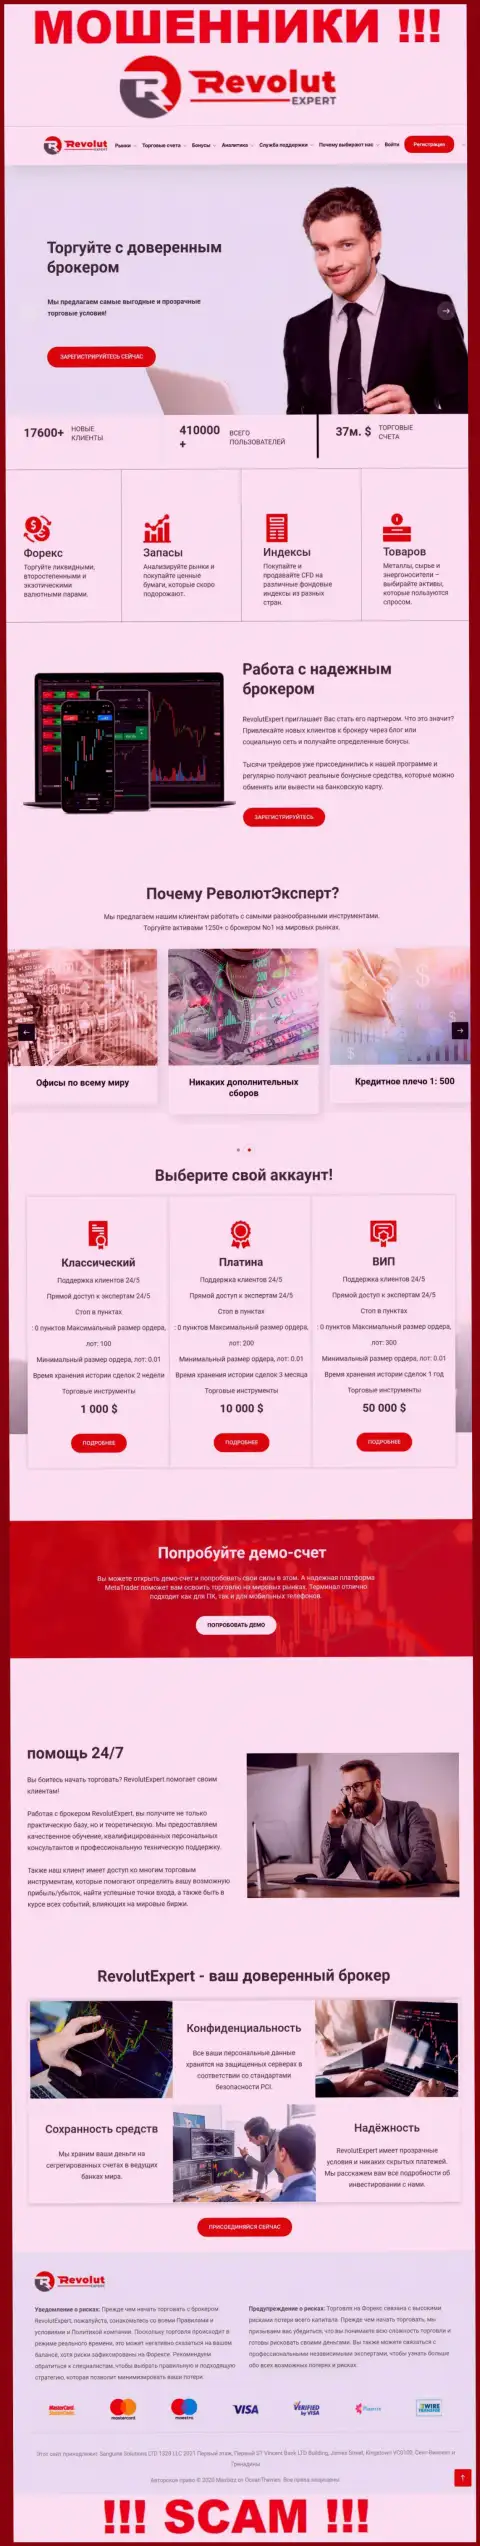 Внешний вид официального сайта жульнической компании Сангин Солюшинс ЛТД